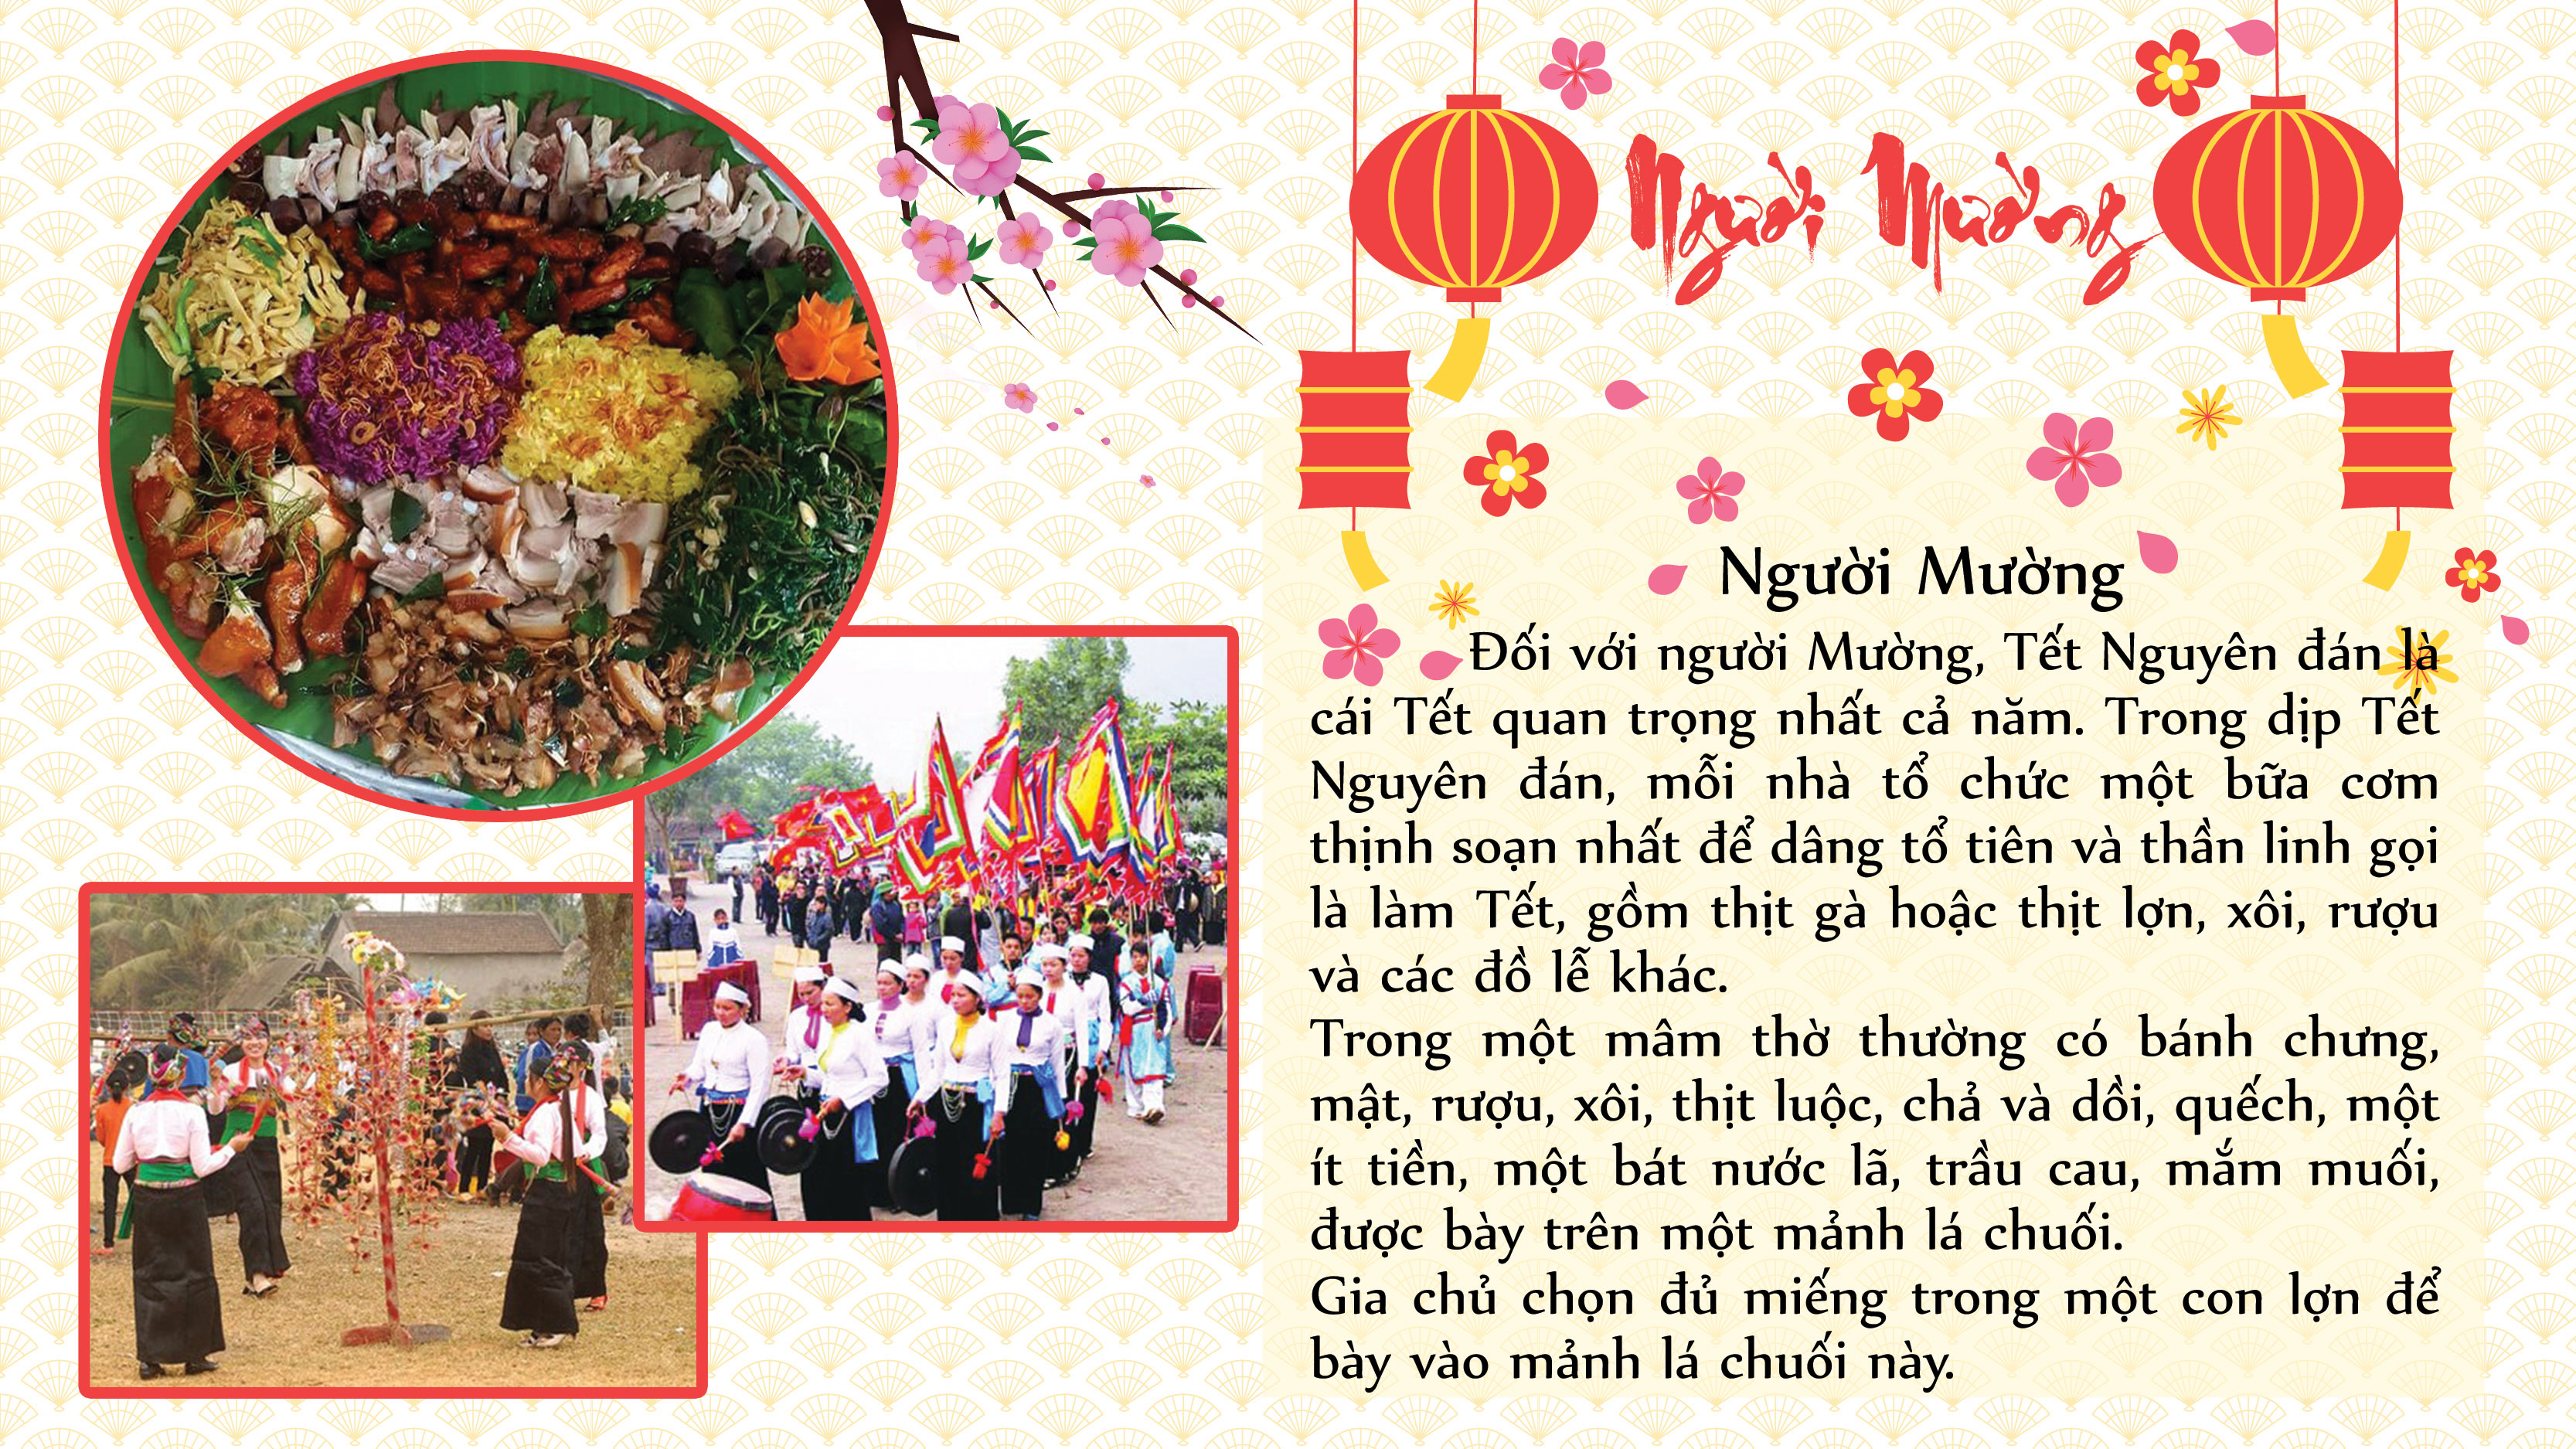 Văn hóa phong tục Tết của người dân tộc Việt Nam luôn ẩn chứa những giá trị văn hóa, lịch sử và tâm linh, góp phần tạo nên bản sắc văn hóa của dân tộc. Hãy cùng tìm hiểu, khám phá và trải nghiệm những nét đặc trưng của phong tục Tết đây - một phần tinh thần đoàn kết và tình yêu đất nước.